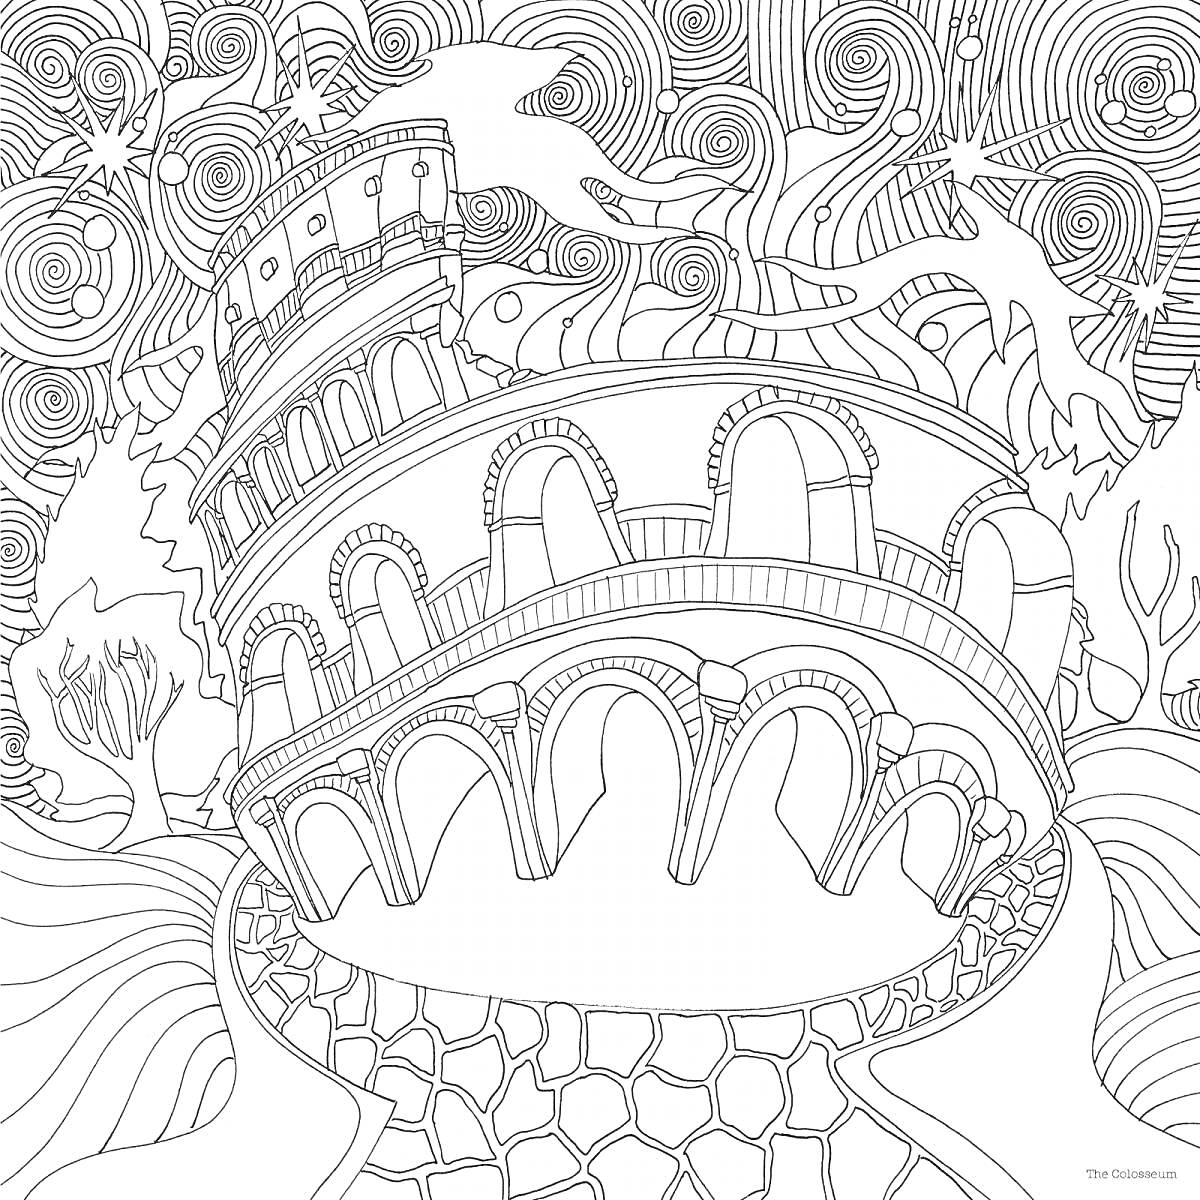 Раскраска Древний Колизей среди волнистых линий и завитков с облаками и звездами вокруг